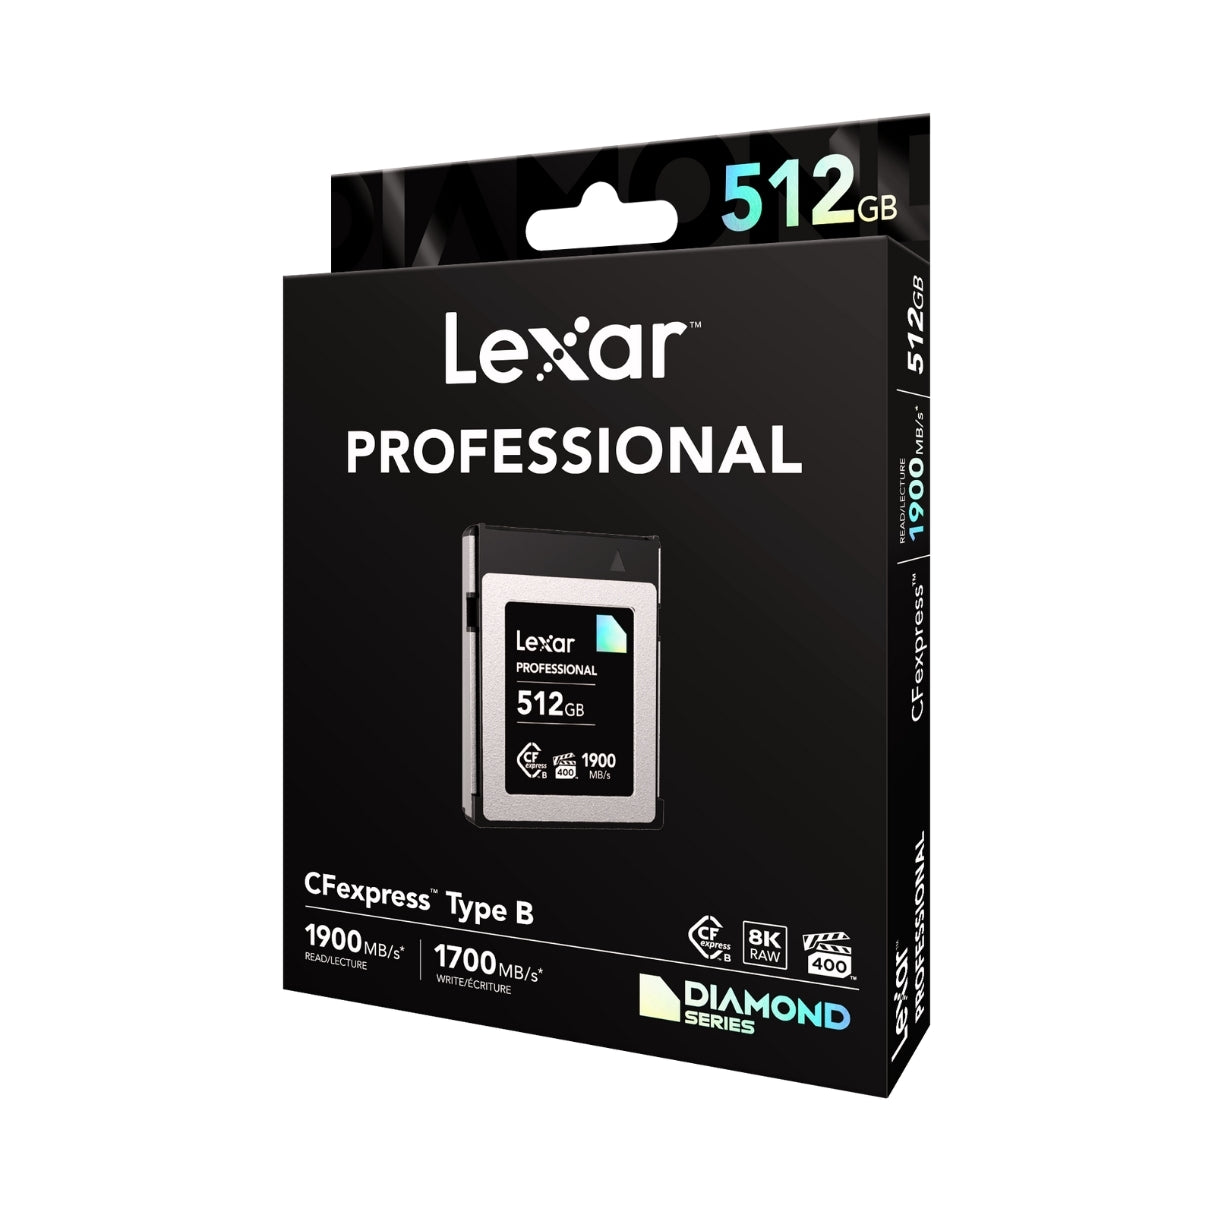 Lexar, Professional CFexpress Typ B Speicherkarte, DIAMOND Serie, 512GB, Speicherkarte für Nikon Z6II, Z7II, Z9, Z8, Kompatibel, 843367127634